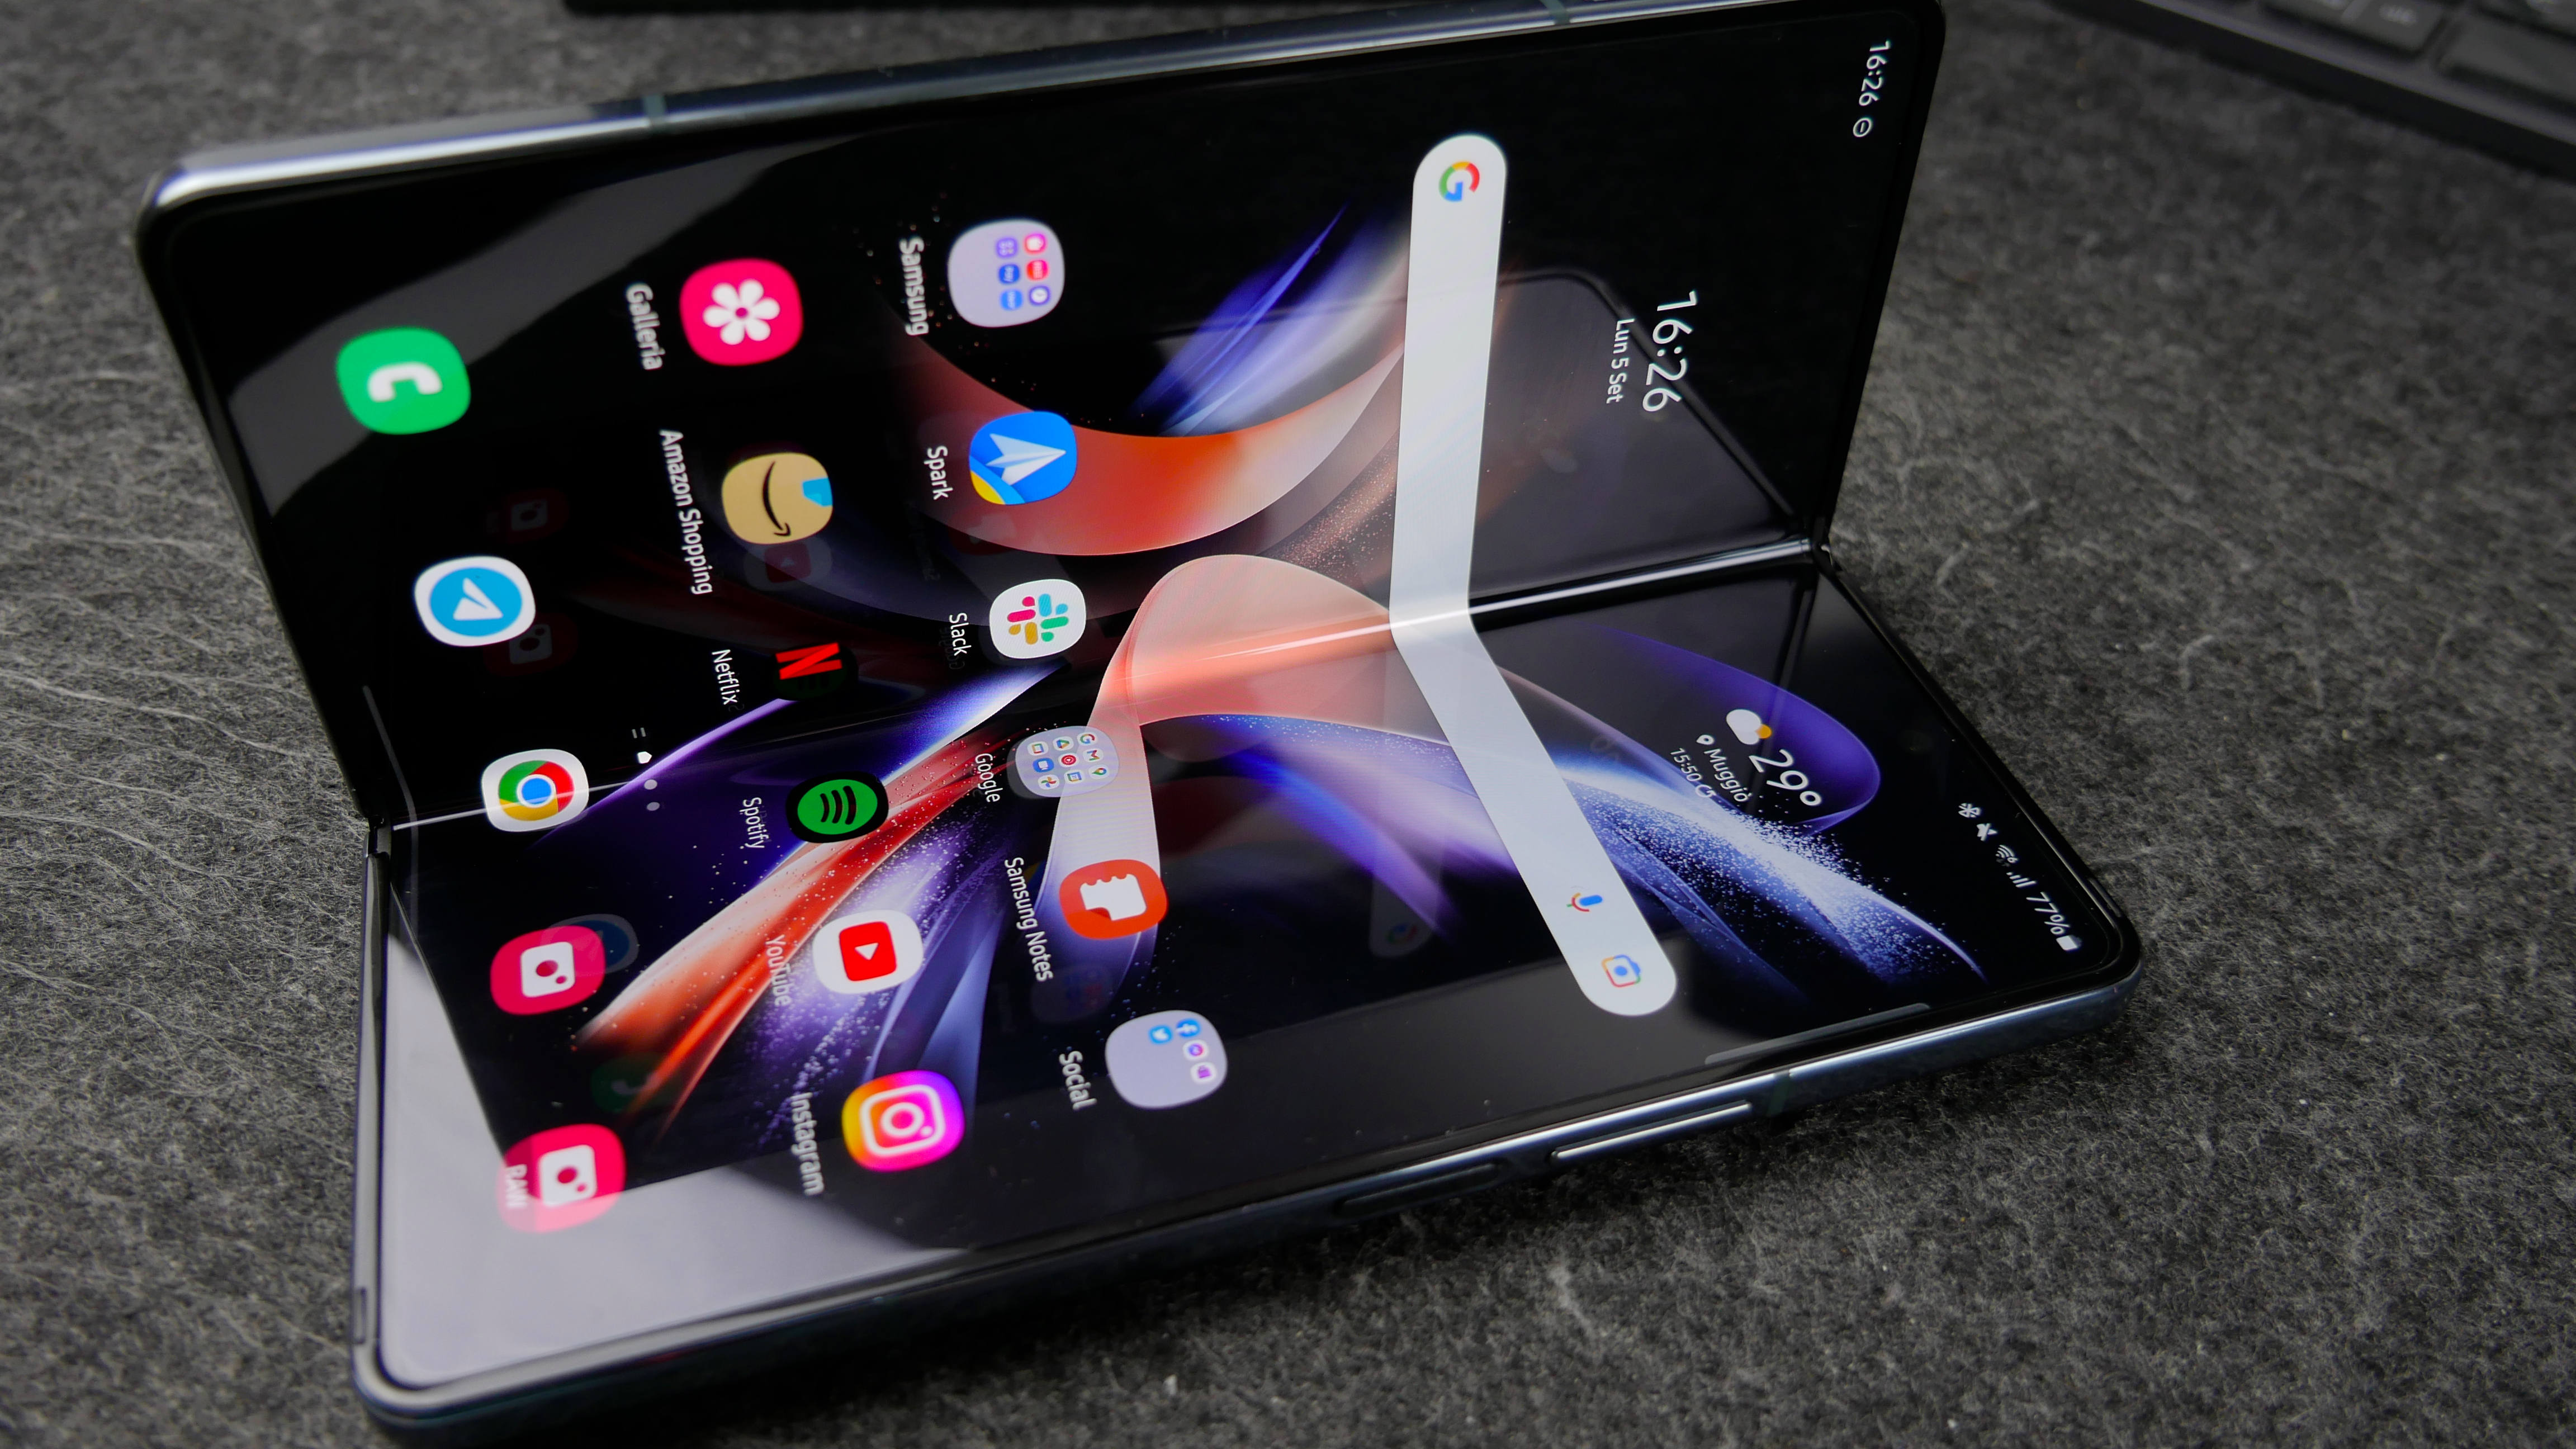 Samsung e smartphone foldable: innovazioni e sfide